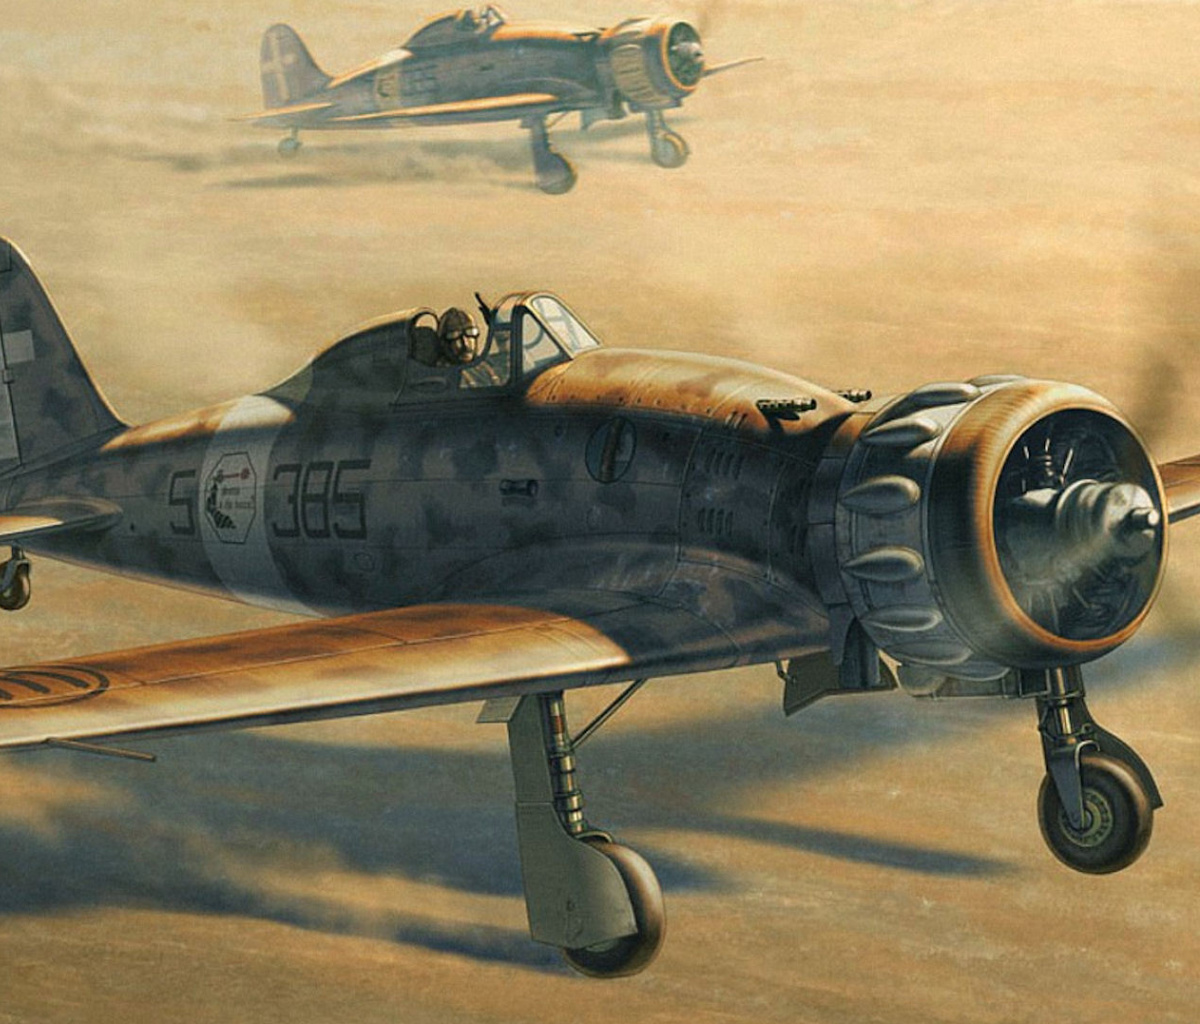 Macchi C.200 - World War II fighter aircraft wallpaper 1200x1024